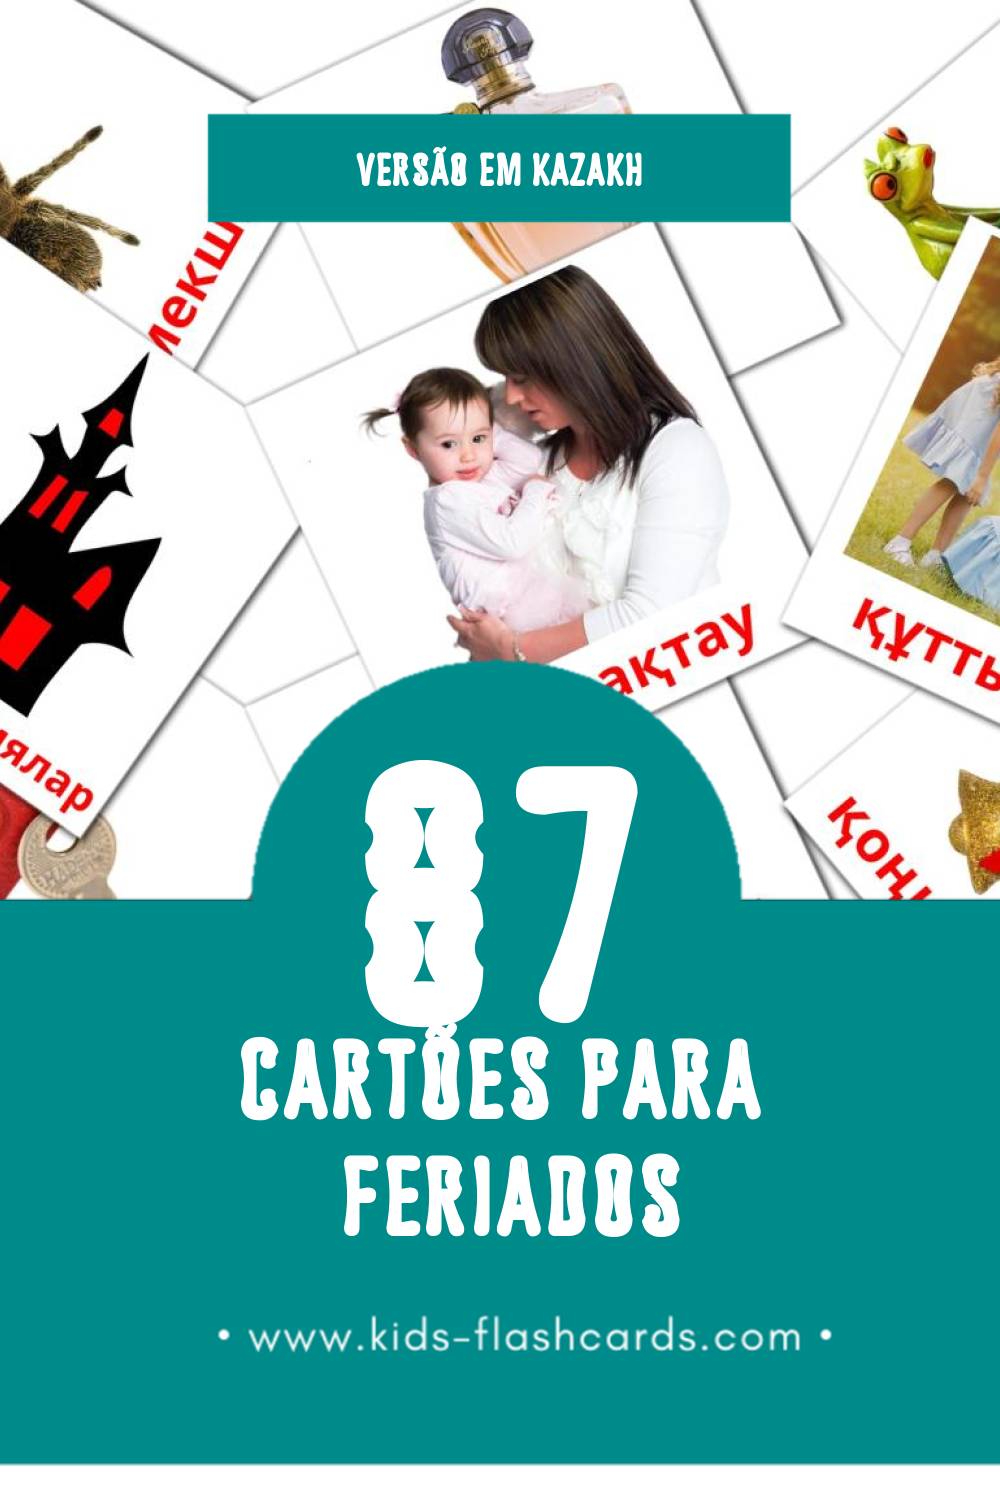 Flashcards de Мерекелер Visuais para Toddlers (87 cartões em Kazakh)